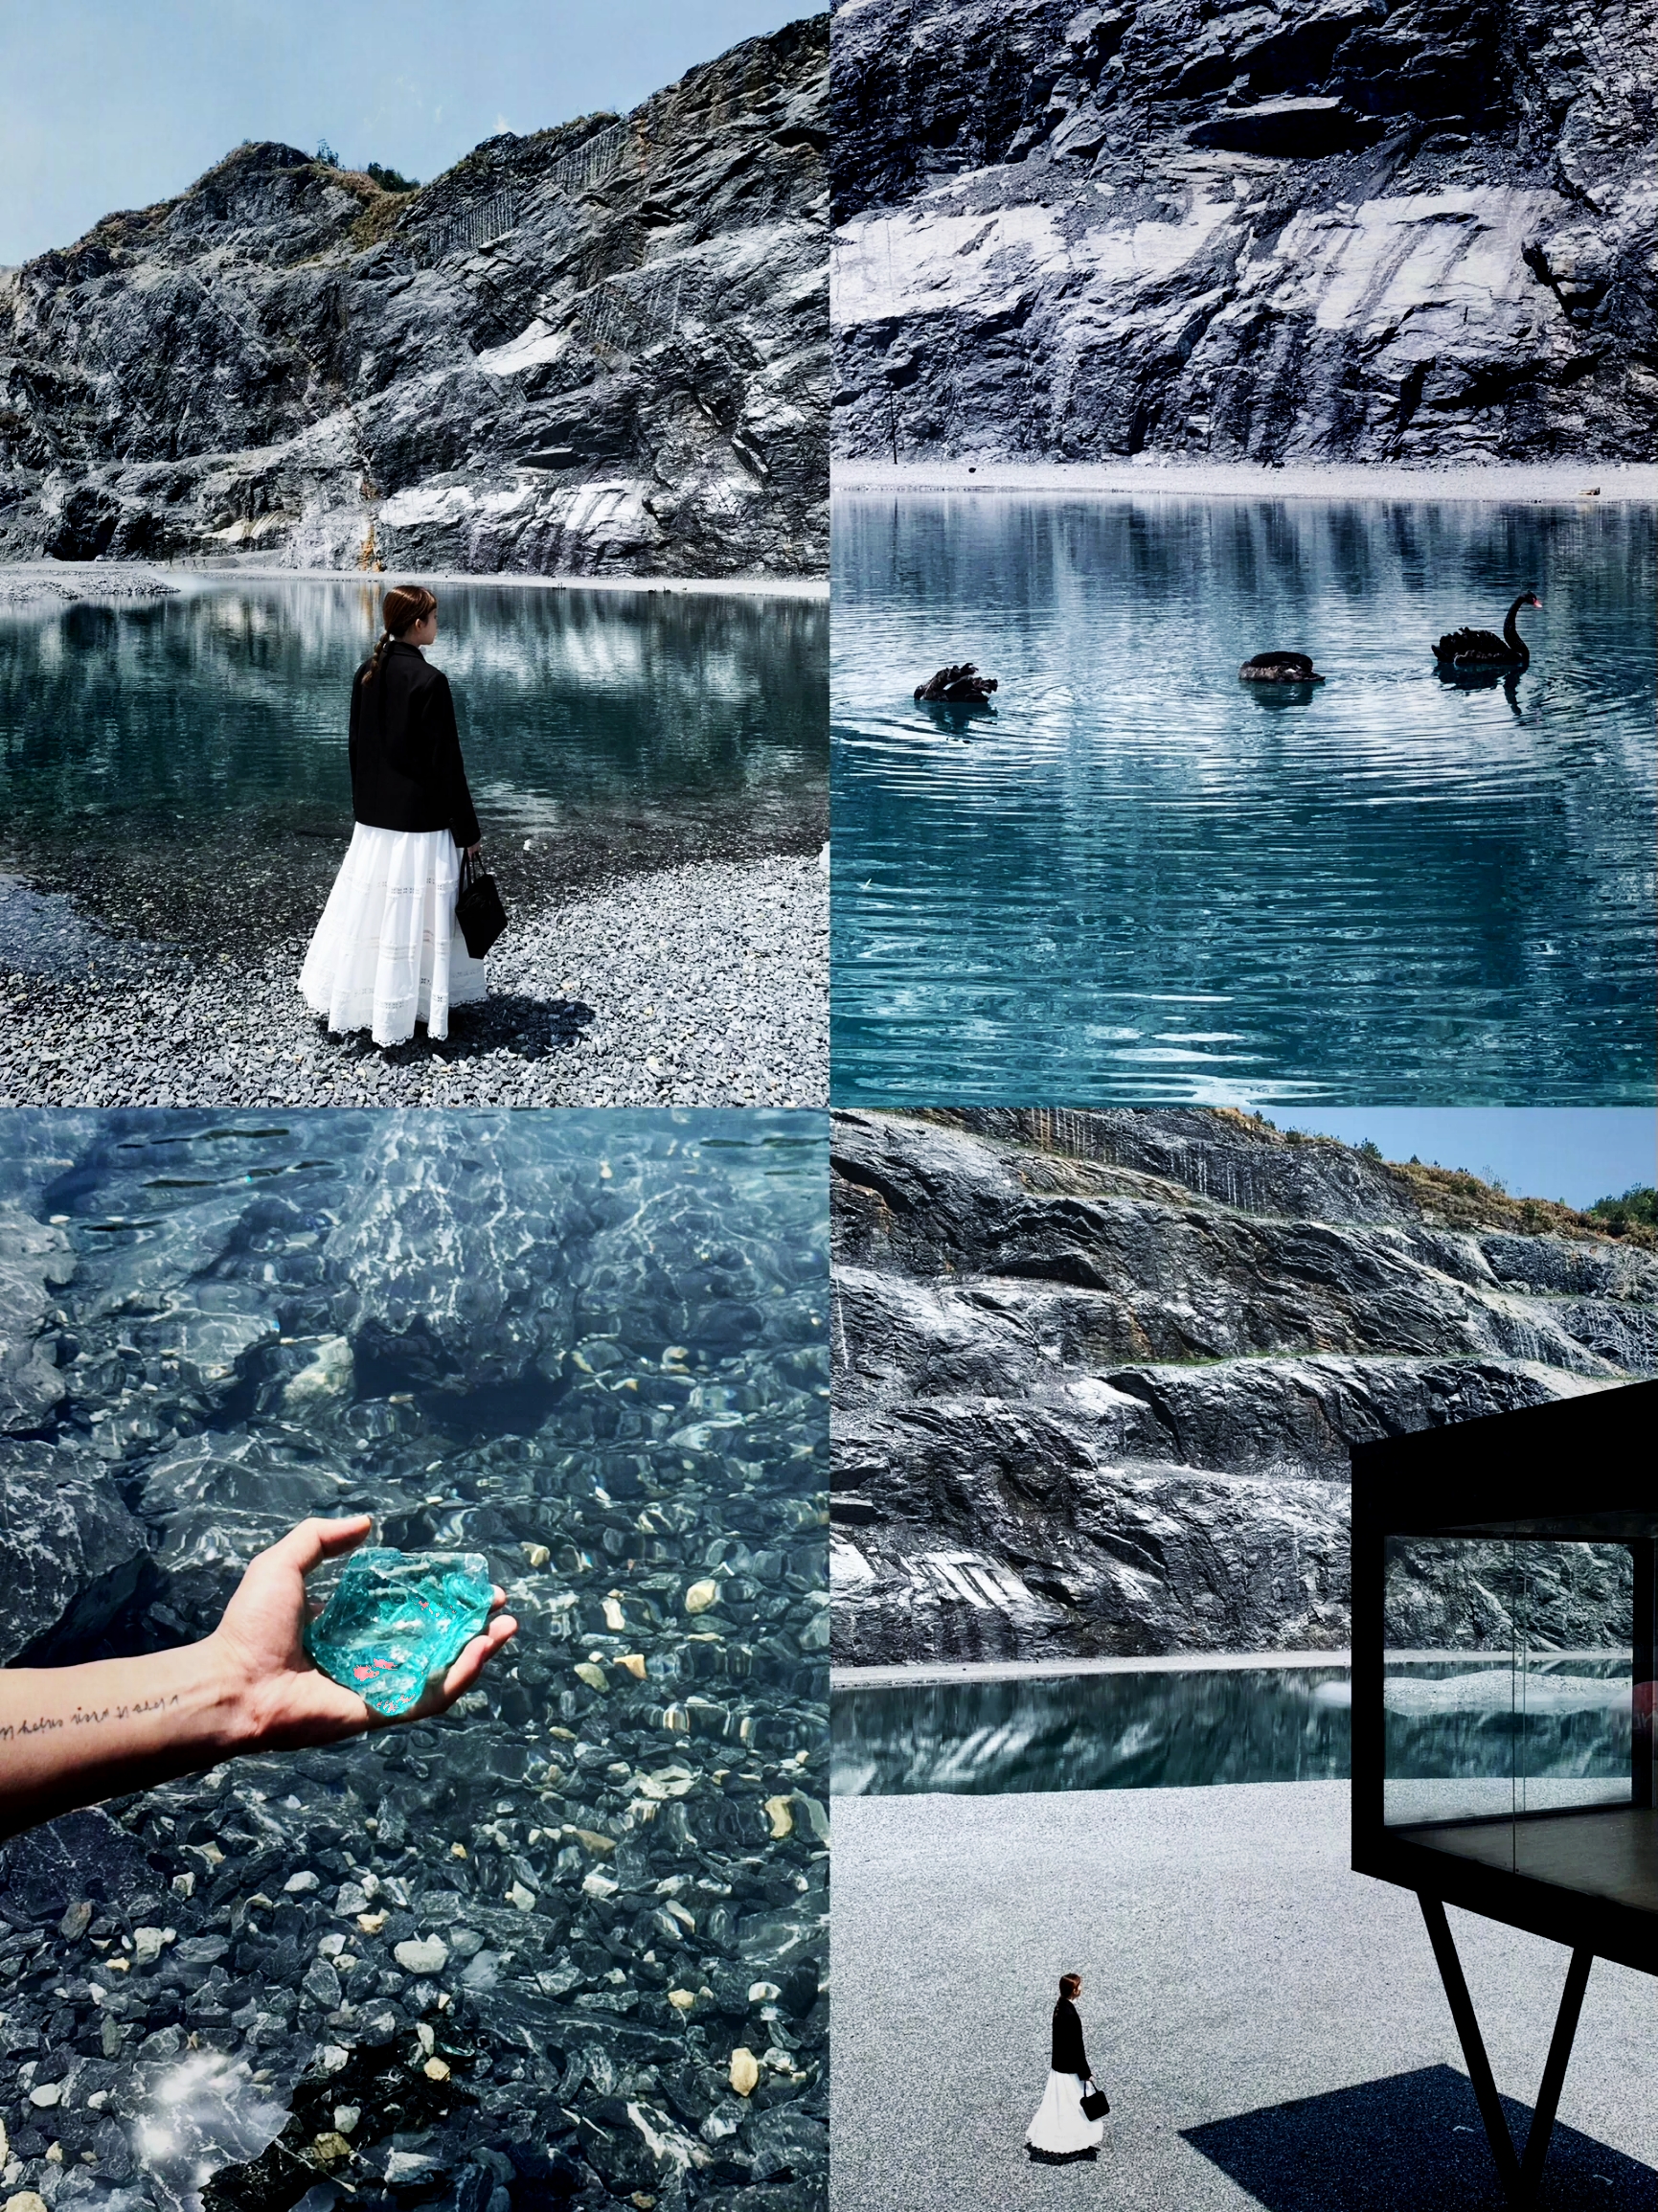 江浙沪属于自己的冰岛🧊|||金华的小冰岛 氛围感拉满了 黑白灰岩石 湖水蓝色 清澈见底 可以玩浆板和